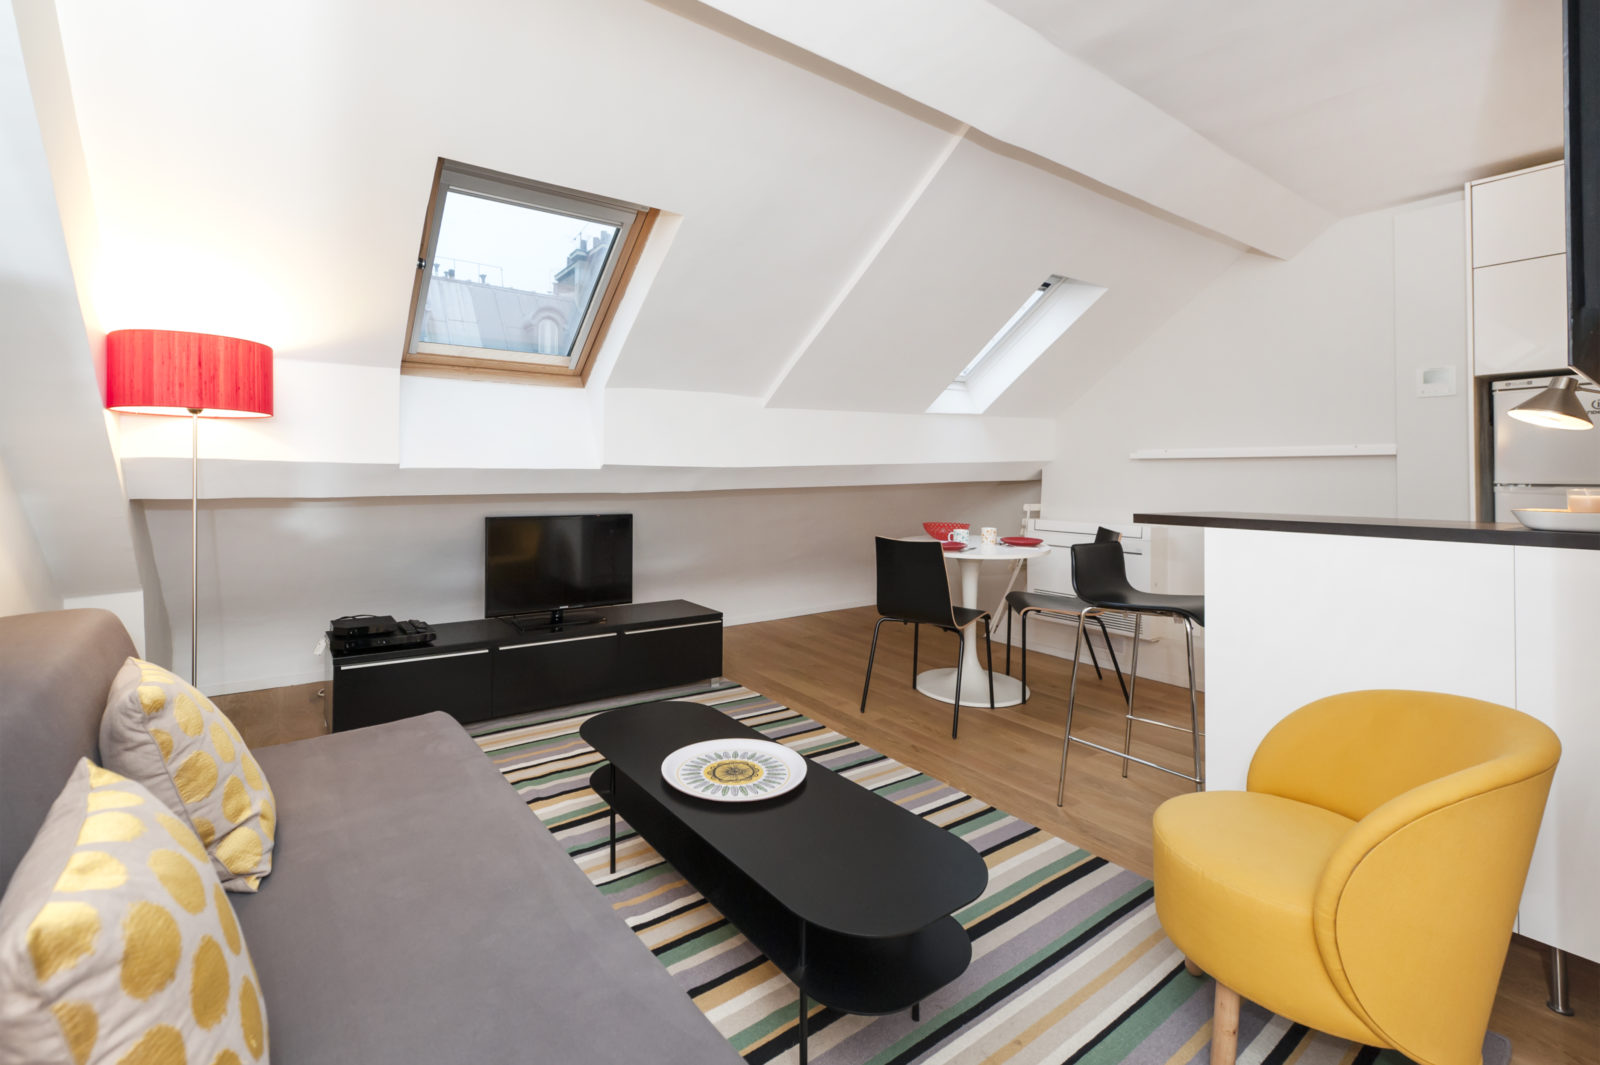 1 bedroom apartment rental in Paris, Rue Madame